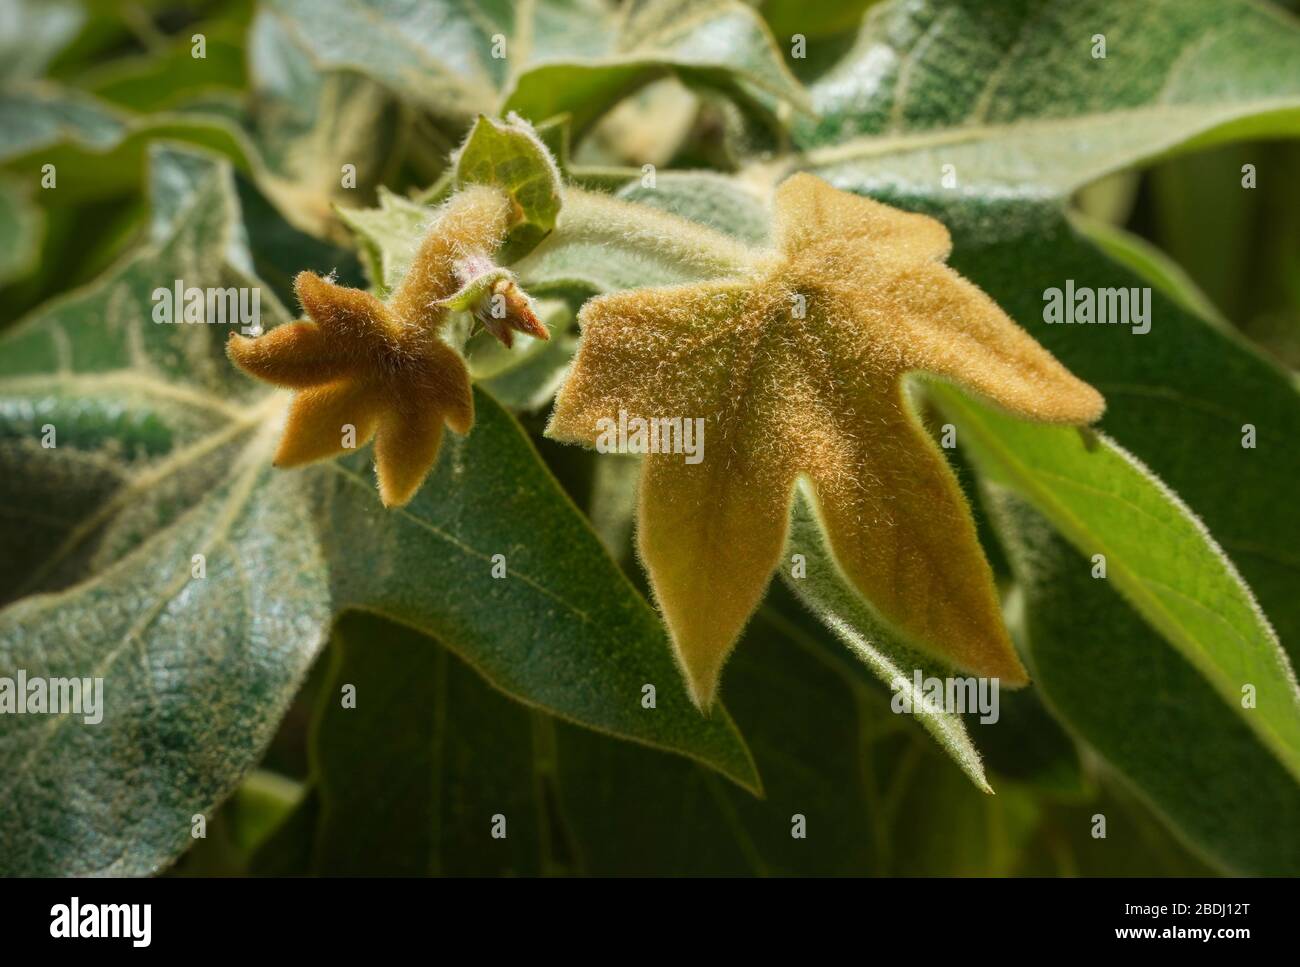 Fuzzy neue Western Sycamore Baum (Platanus racemosa) Blätter nur Knospen im Frühjahr. Nahaufnahme, Vollformat, Grün- und Ockerfarben. Stockfoto